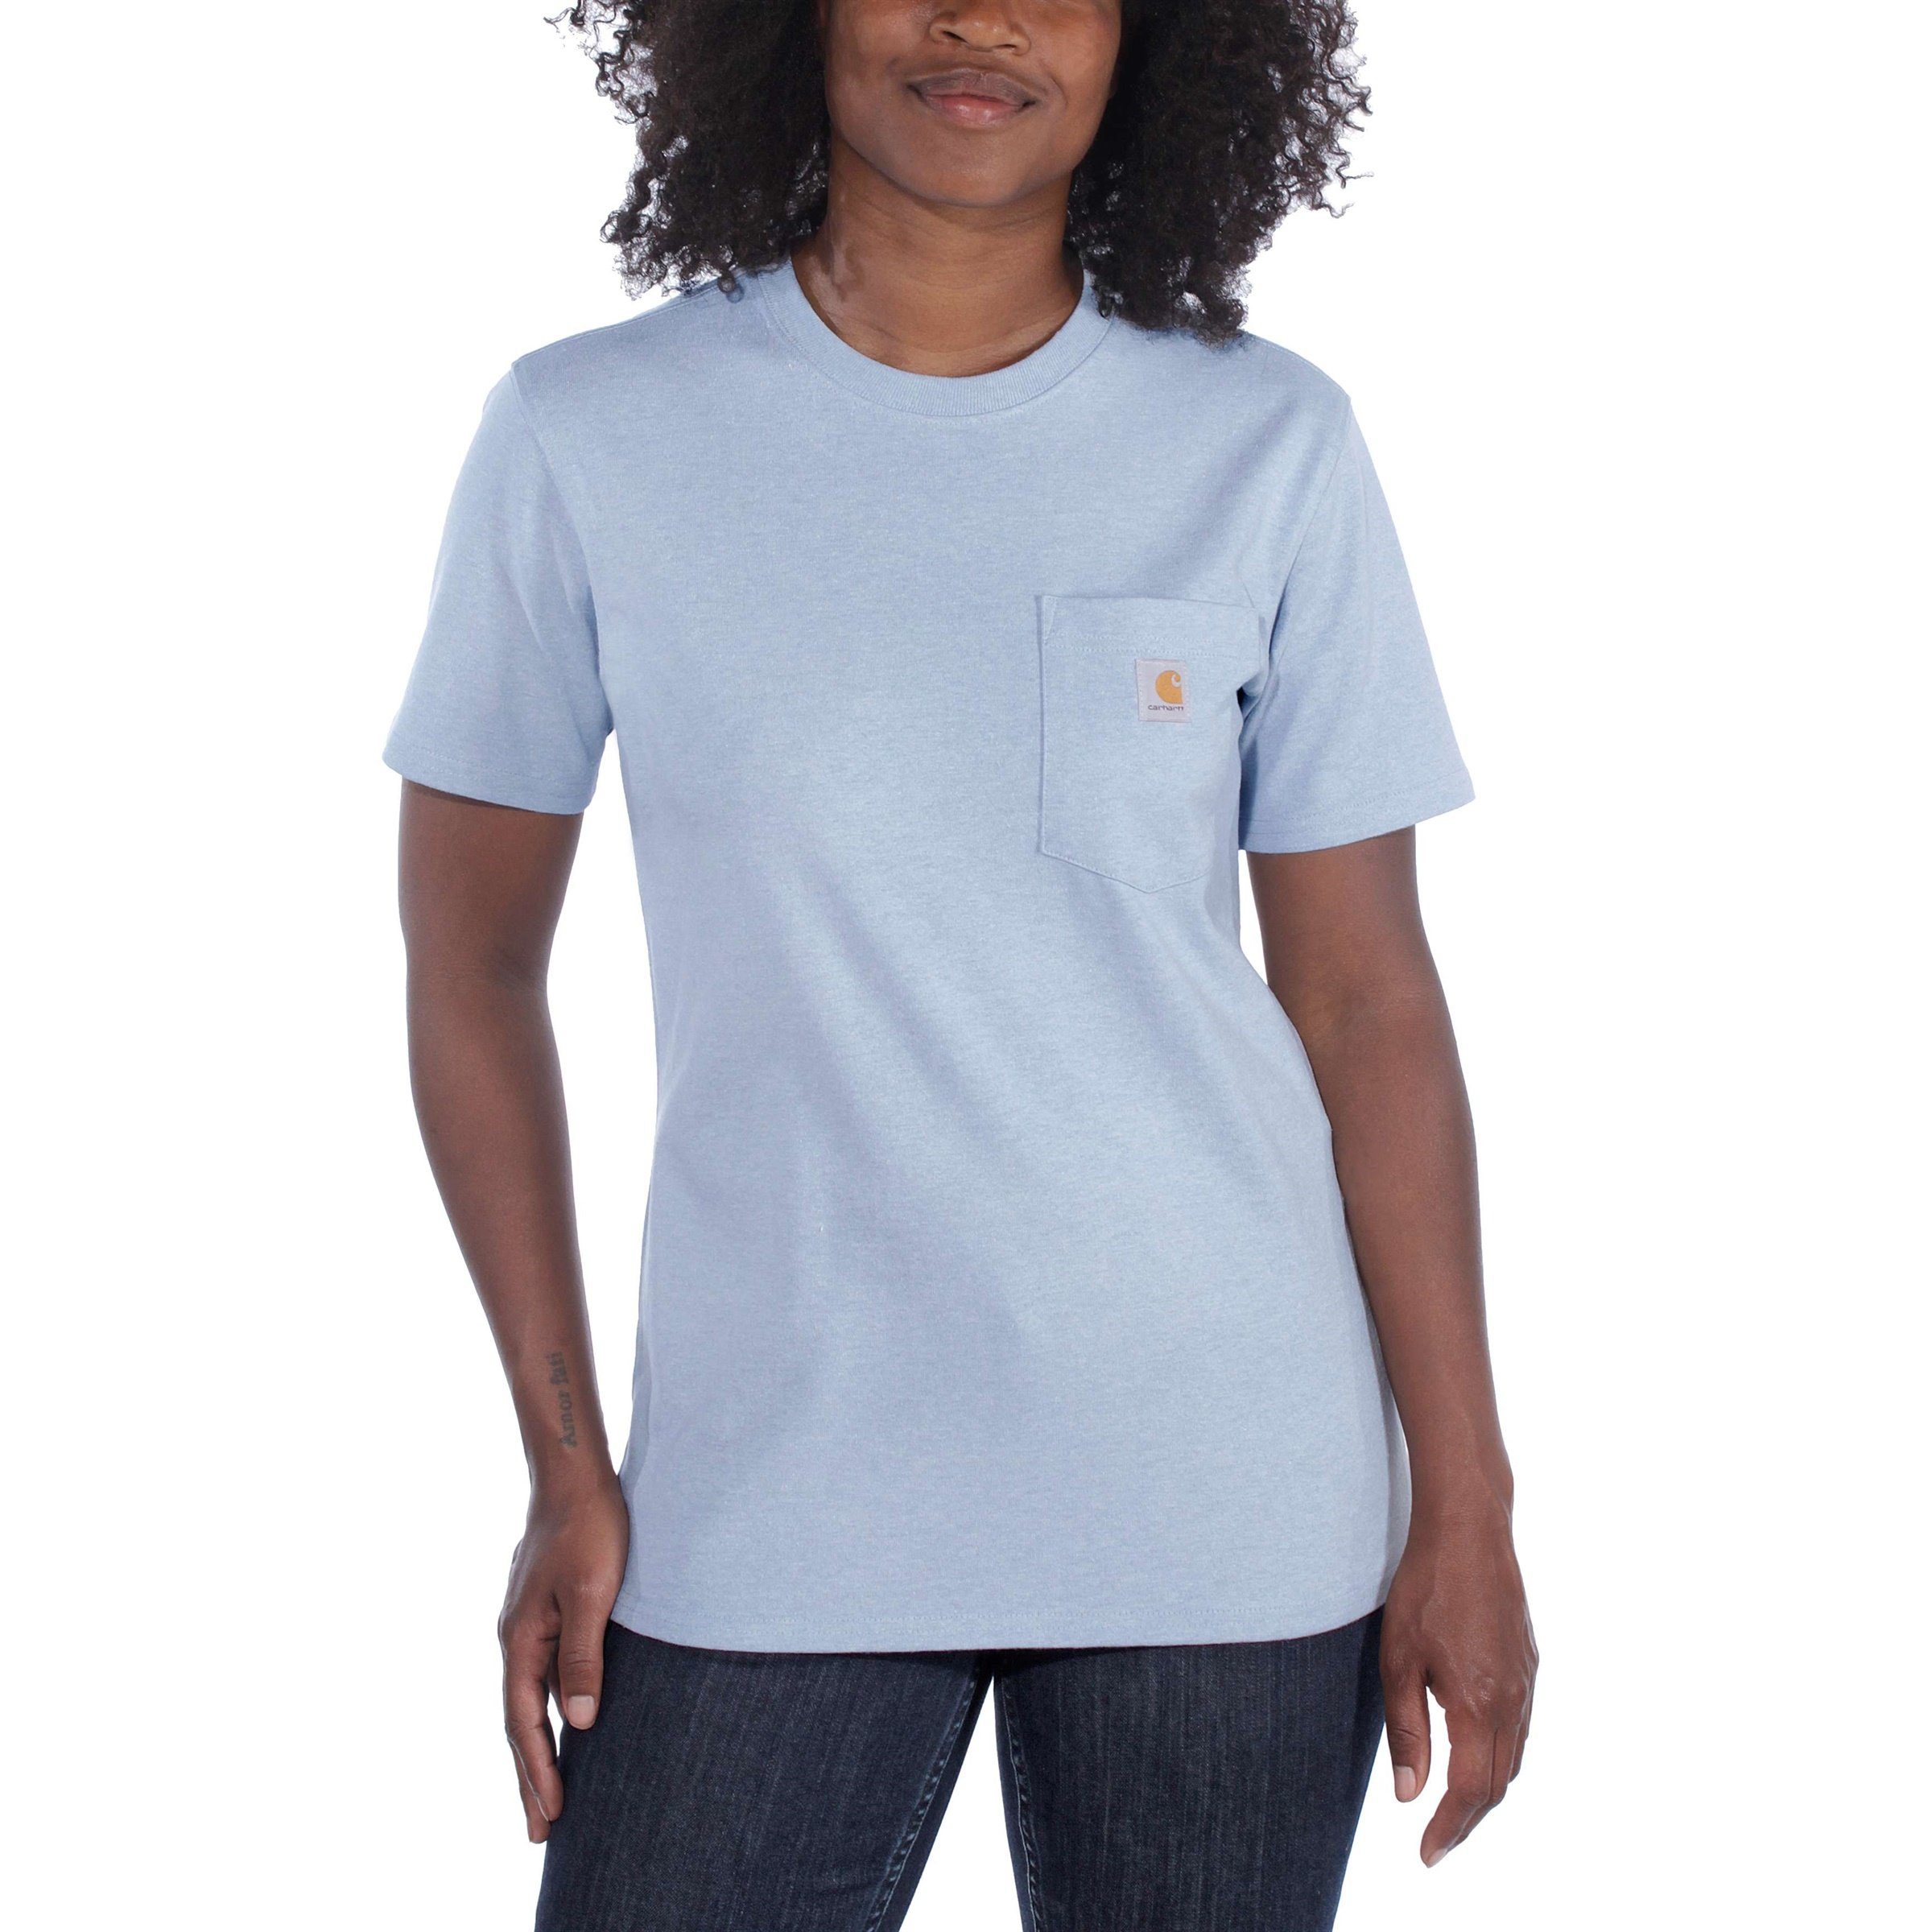 Loose T-Shirt Carhartt Short-Sleeve T-Shirt Heavyweight Fit Carhartt Adult Damen Pocket grey heather